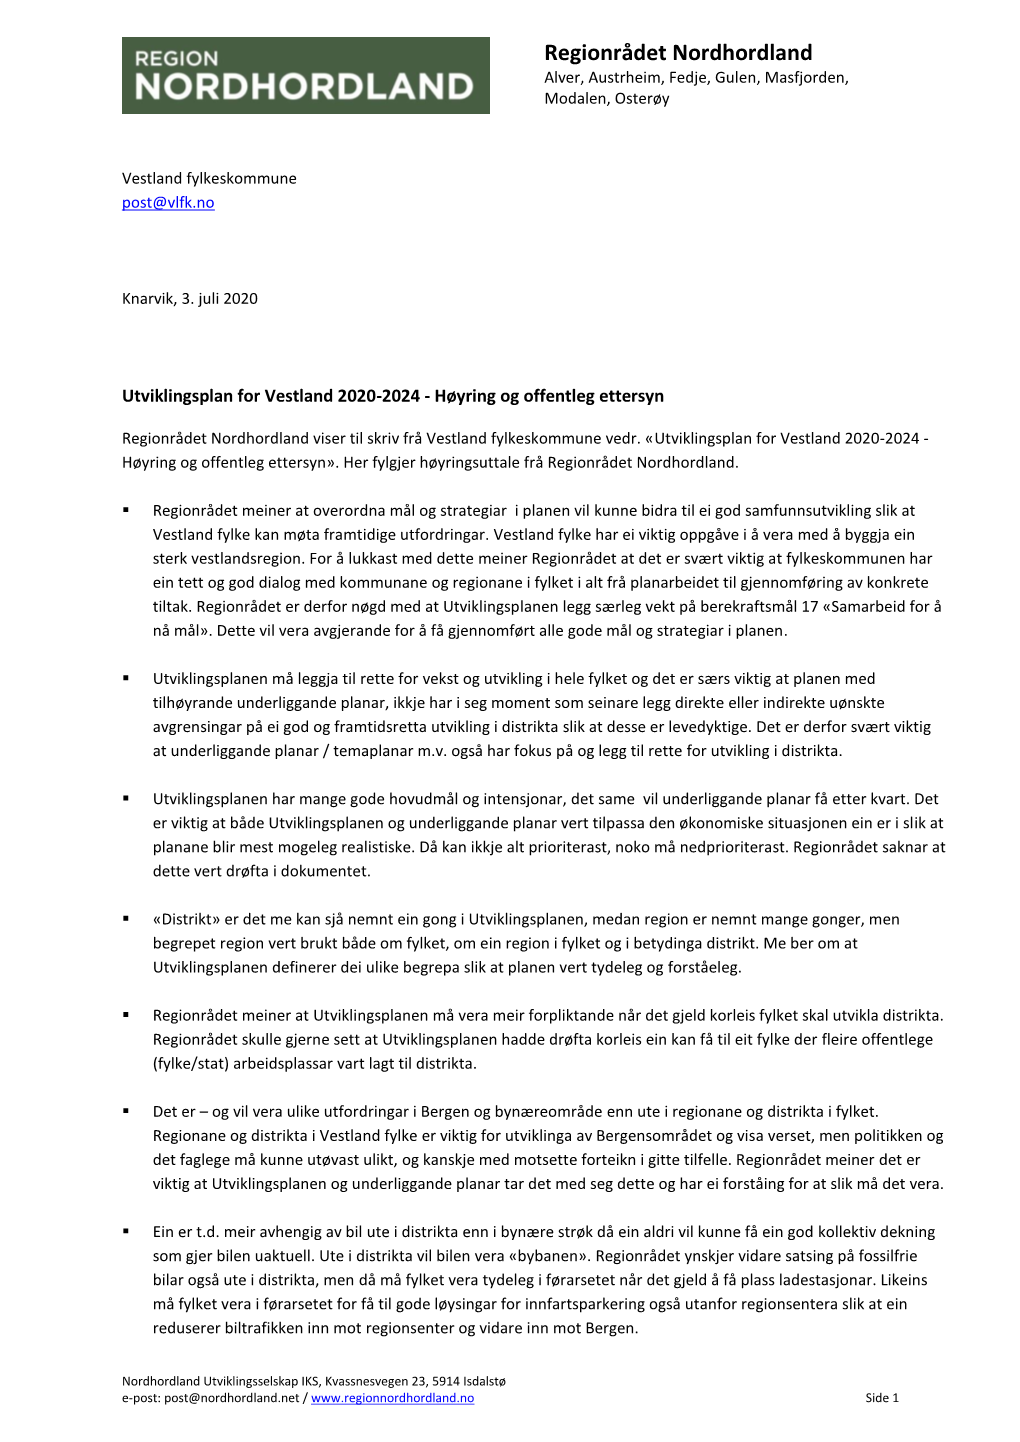 Utviklingsplan for Vestland 2020-2024 - Høyring Og Offentleg Ettersyn